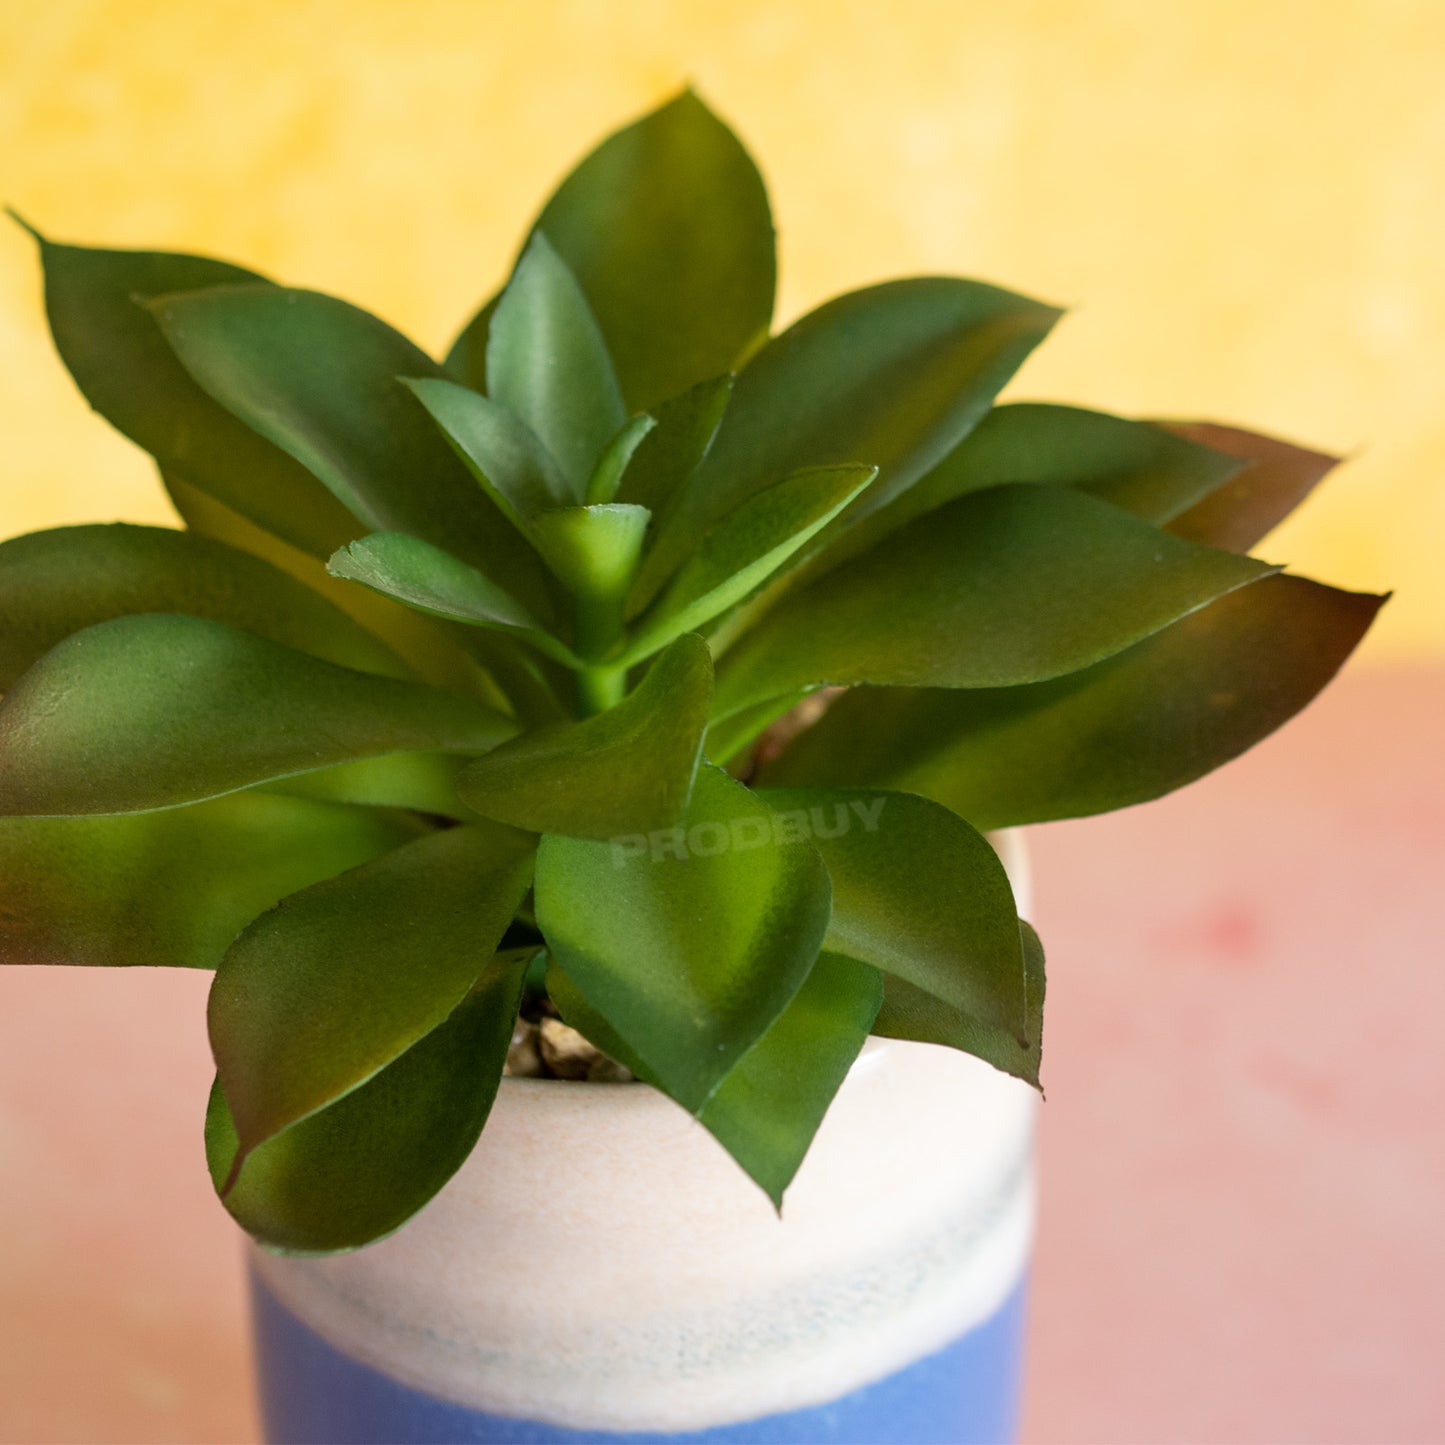 Set of 3 Mediterranean Artificial Succulent Plant Pots